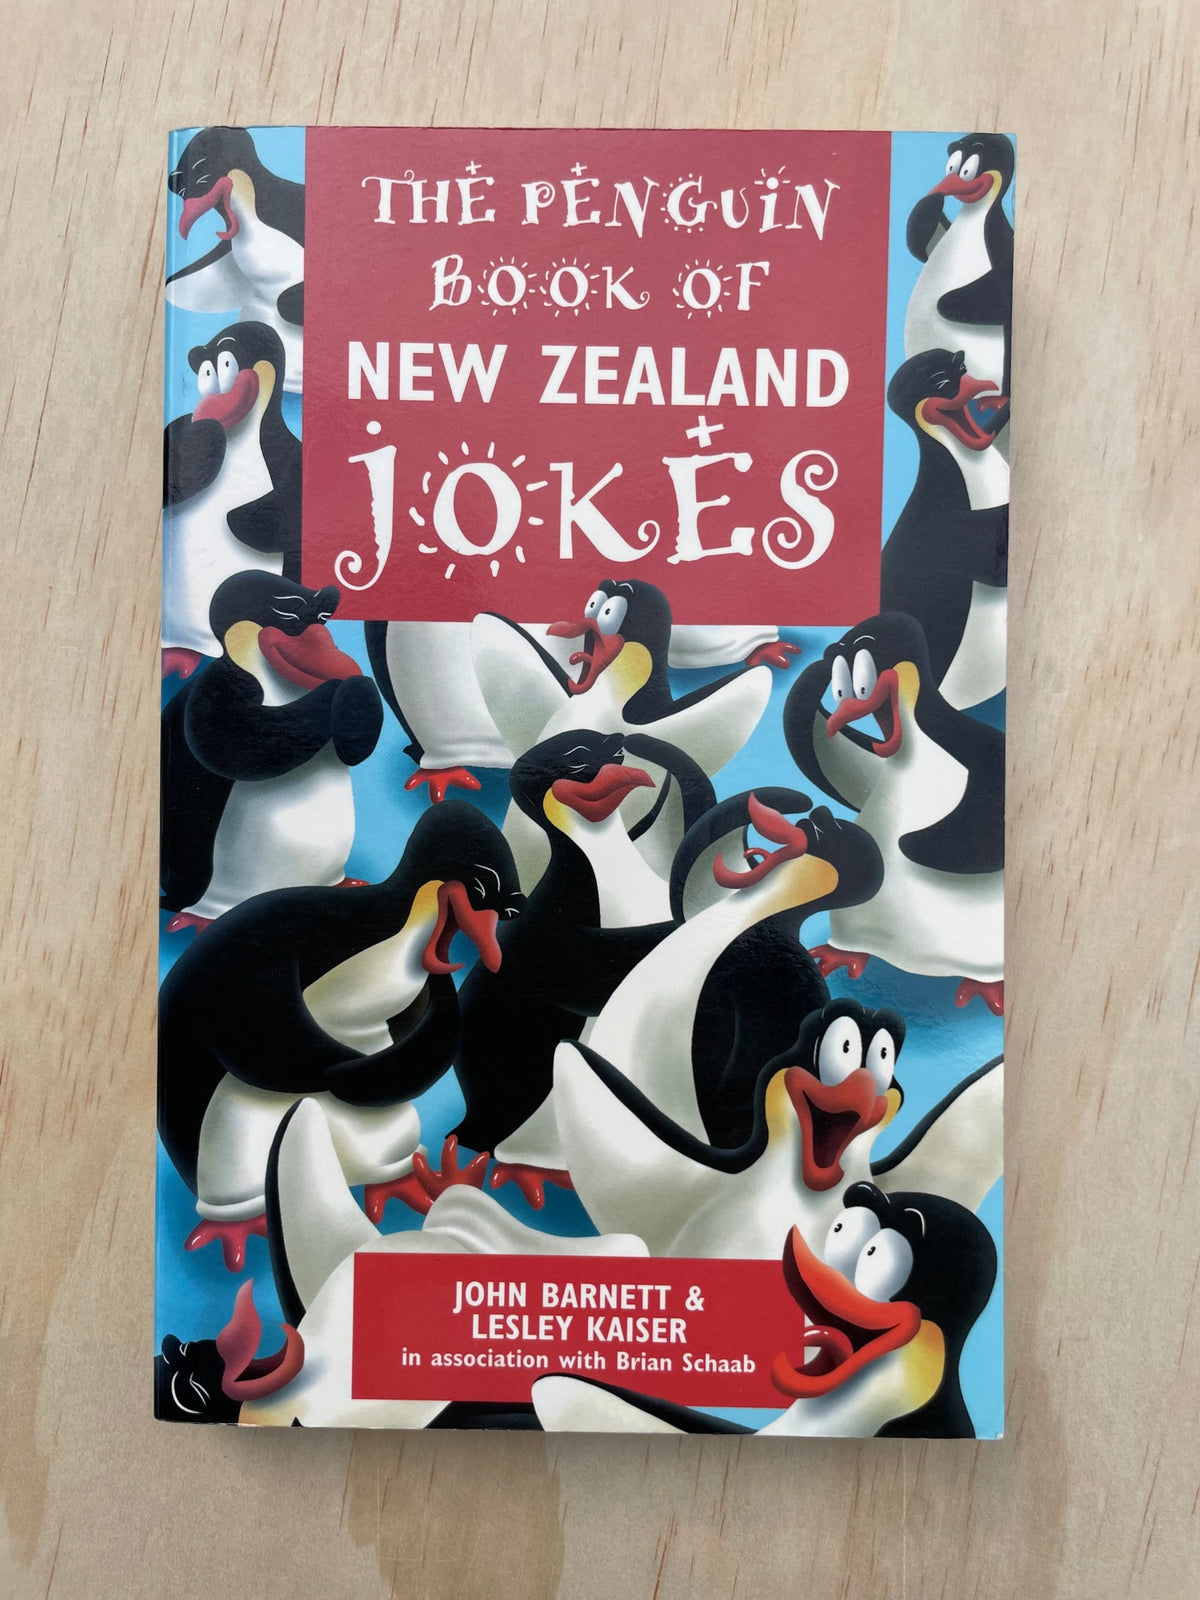 The Penguin Book of New Zealand Jokes - John Barnett & Lesley Kaiser